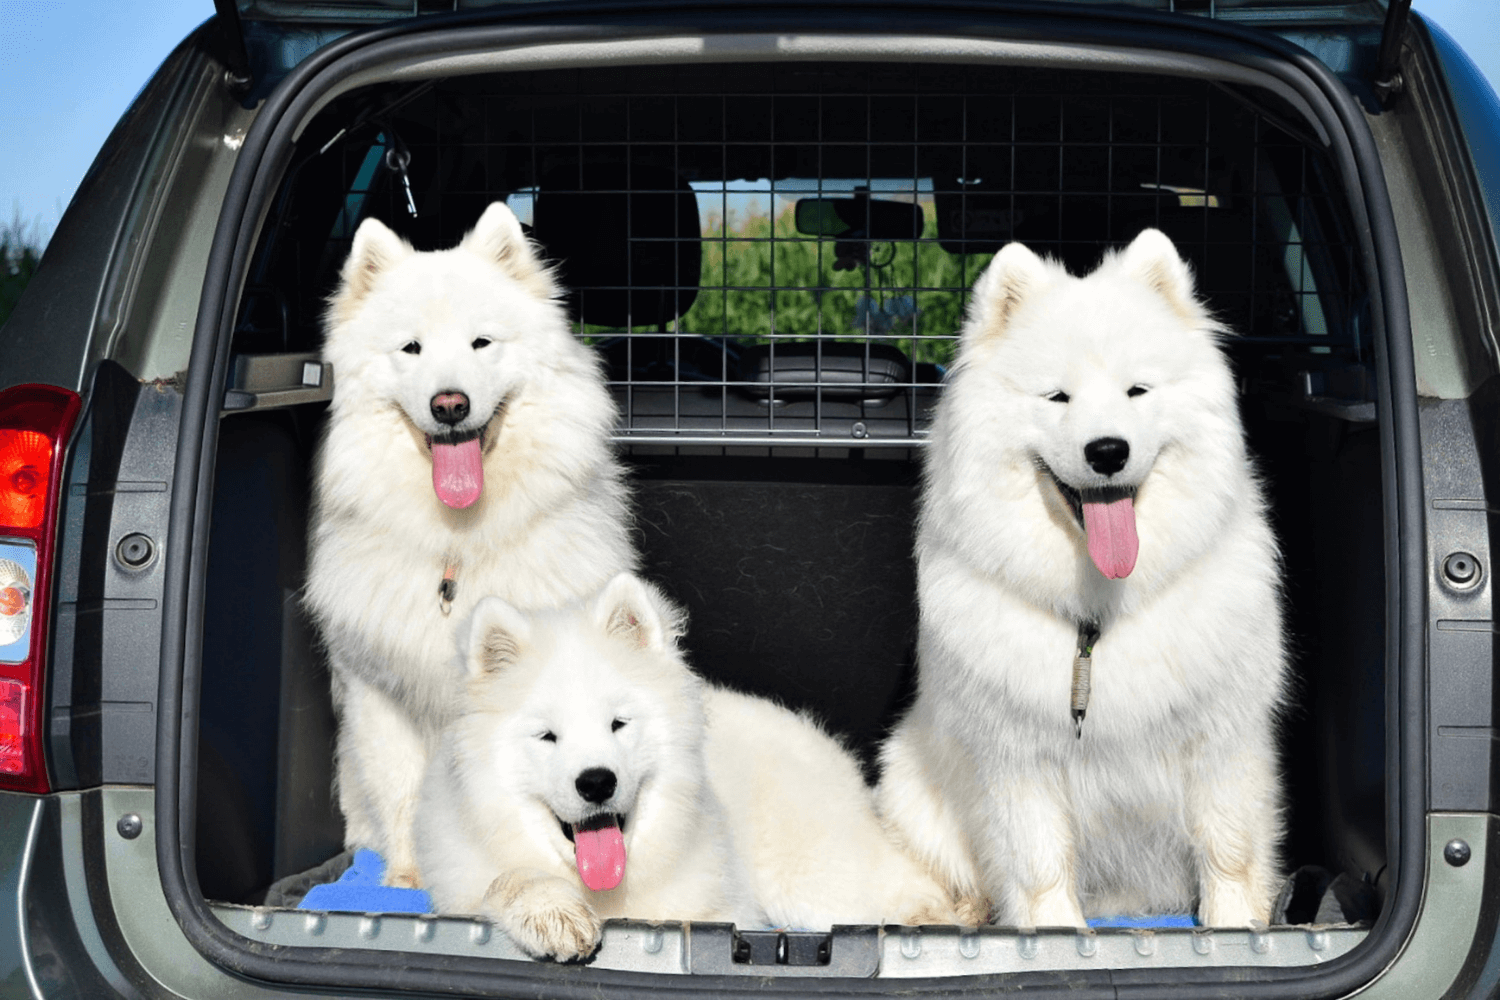 3 Gründe, warum das Travall TailGate Heckgitter eine sinnvolle Alternative  zur Hundebox ist - Travall Blog